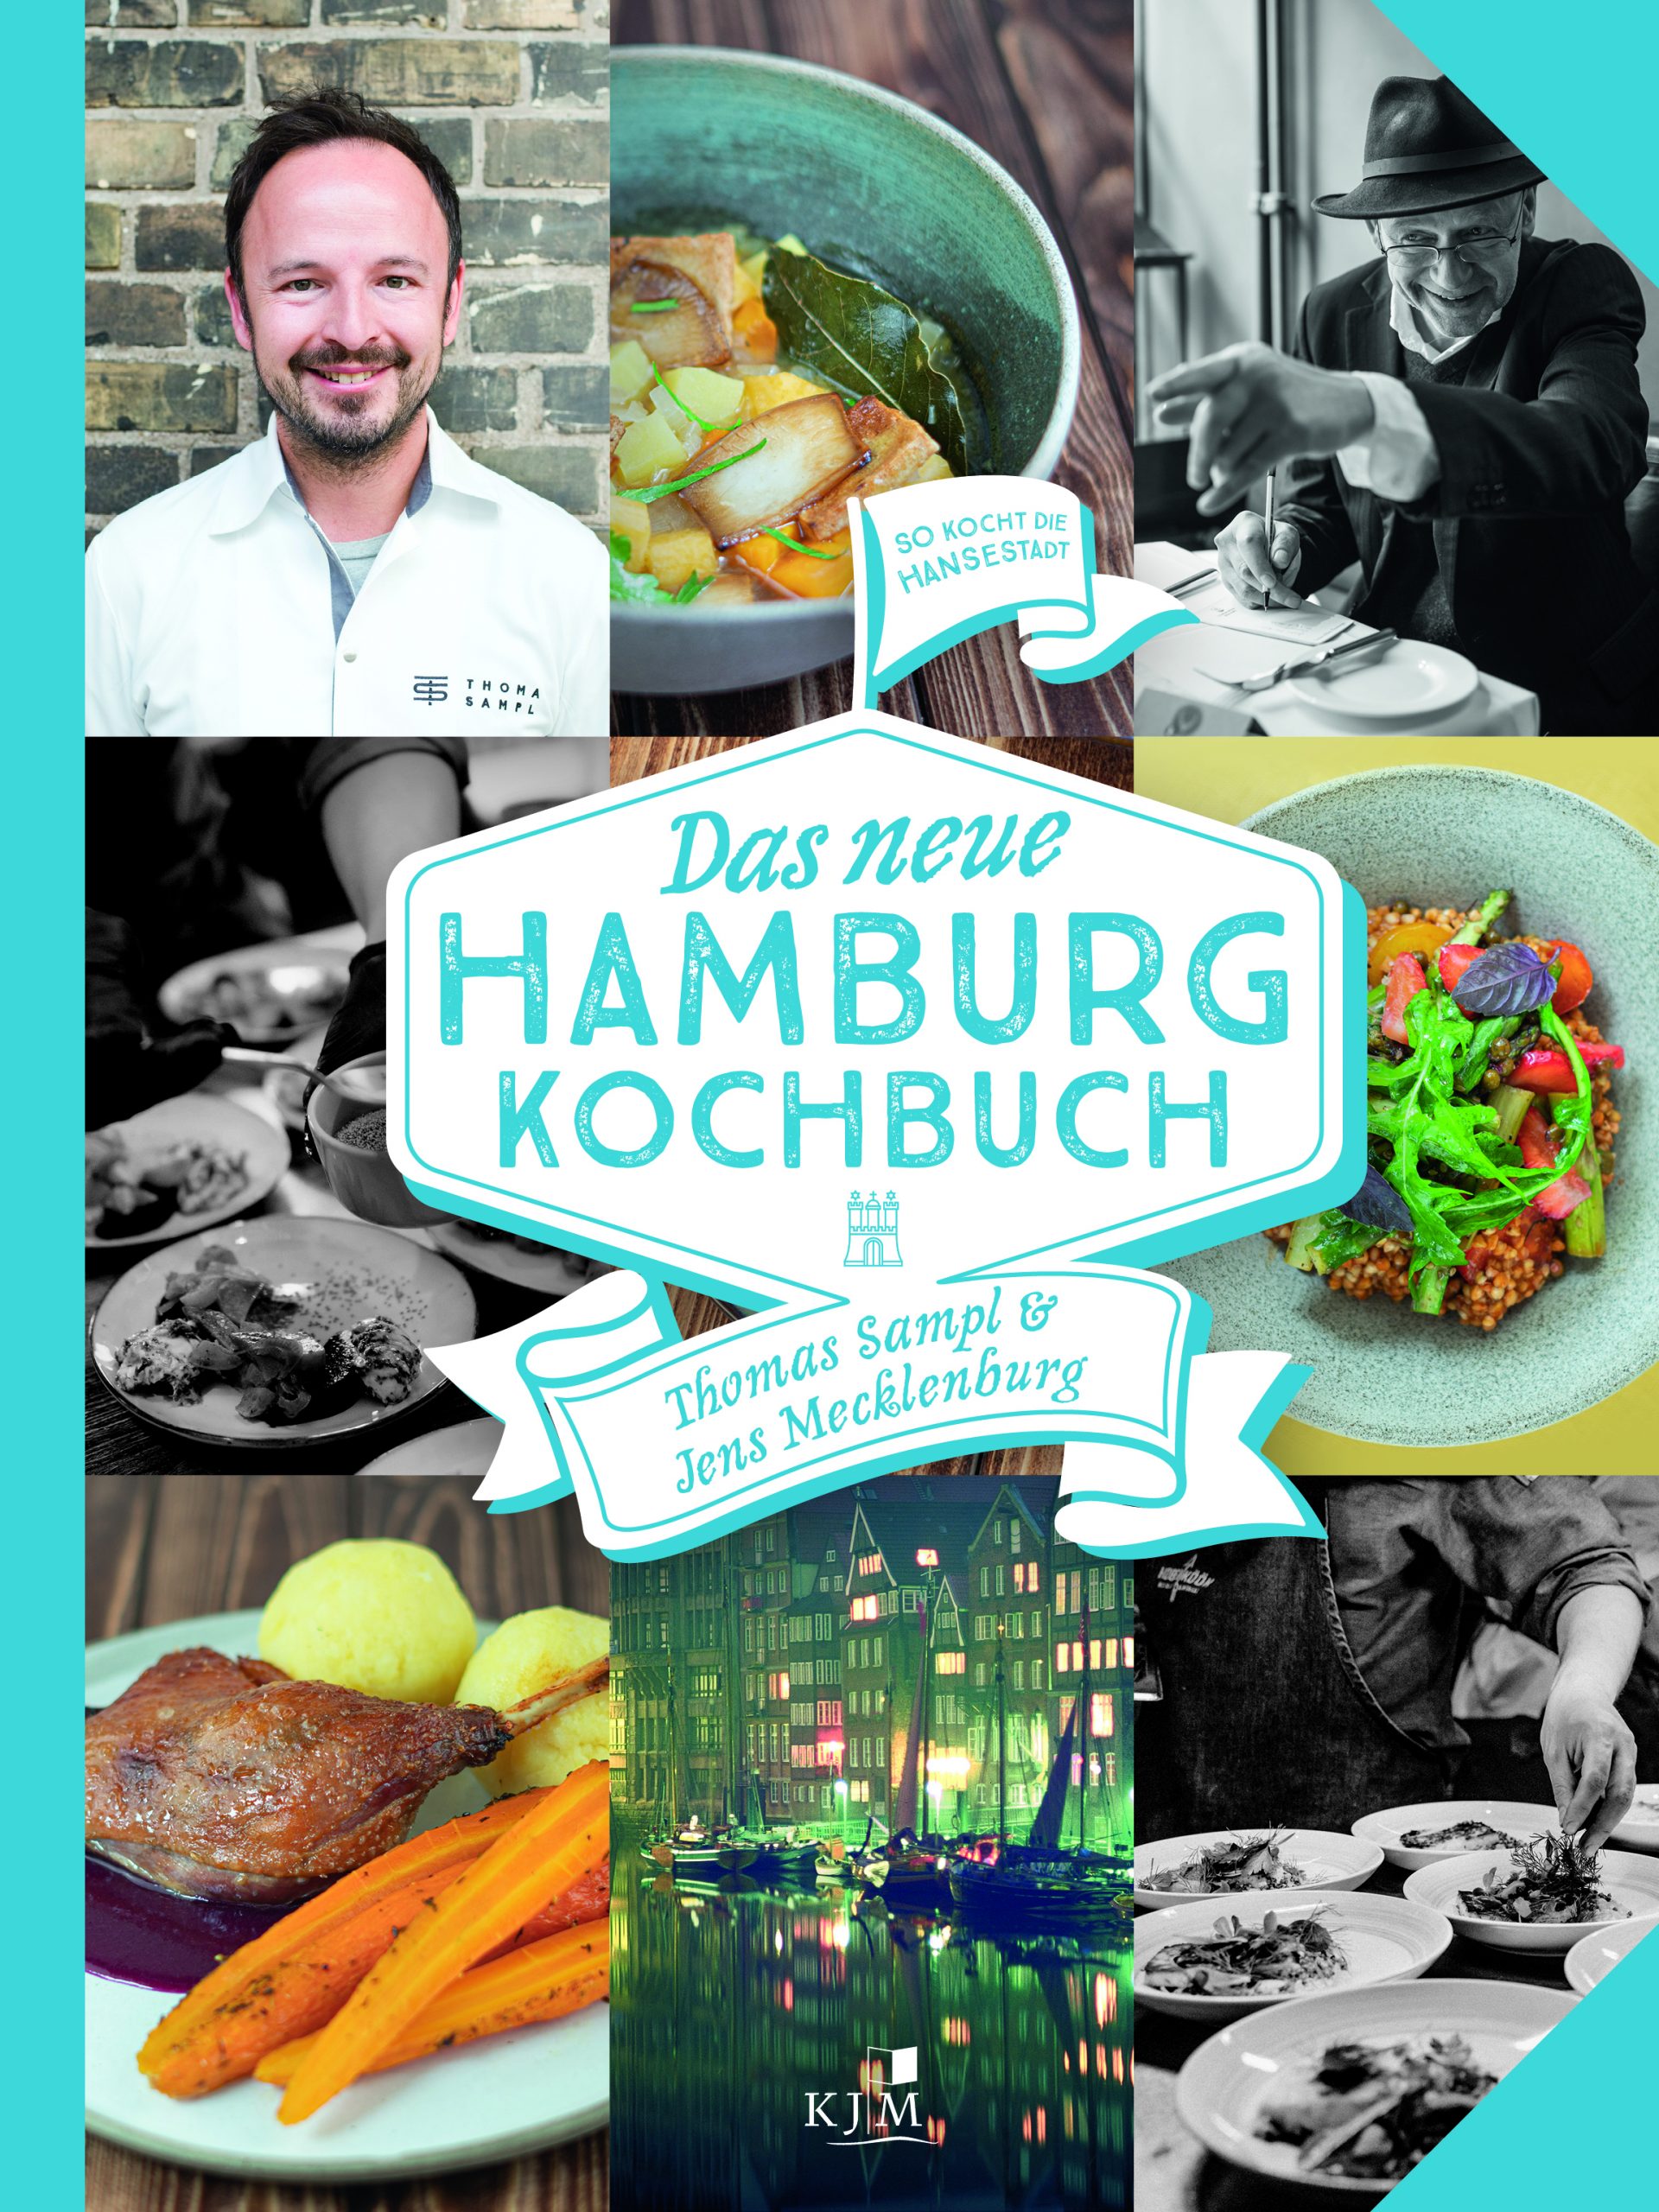 Das neue Hamburg Kochbuch von Thomas Sampl und Jens Mecklenburg